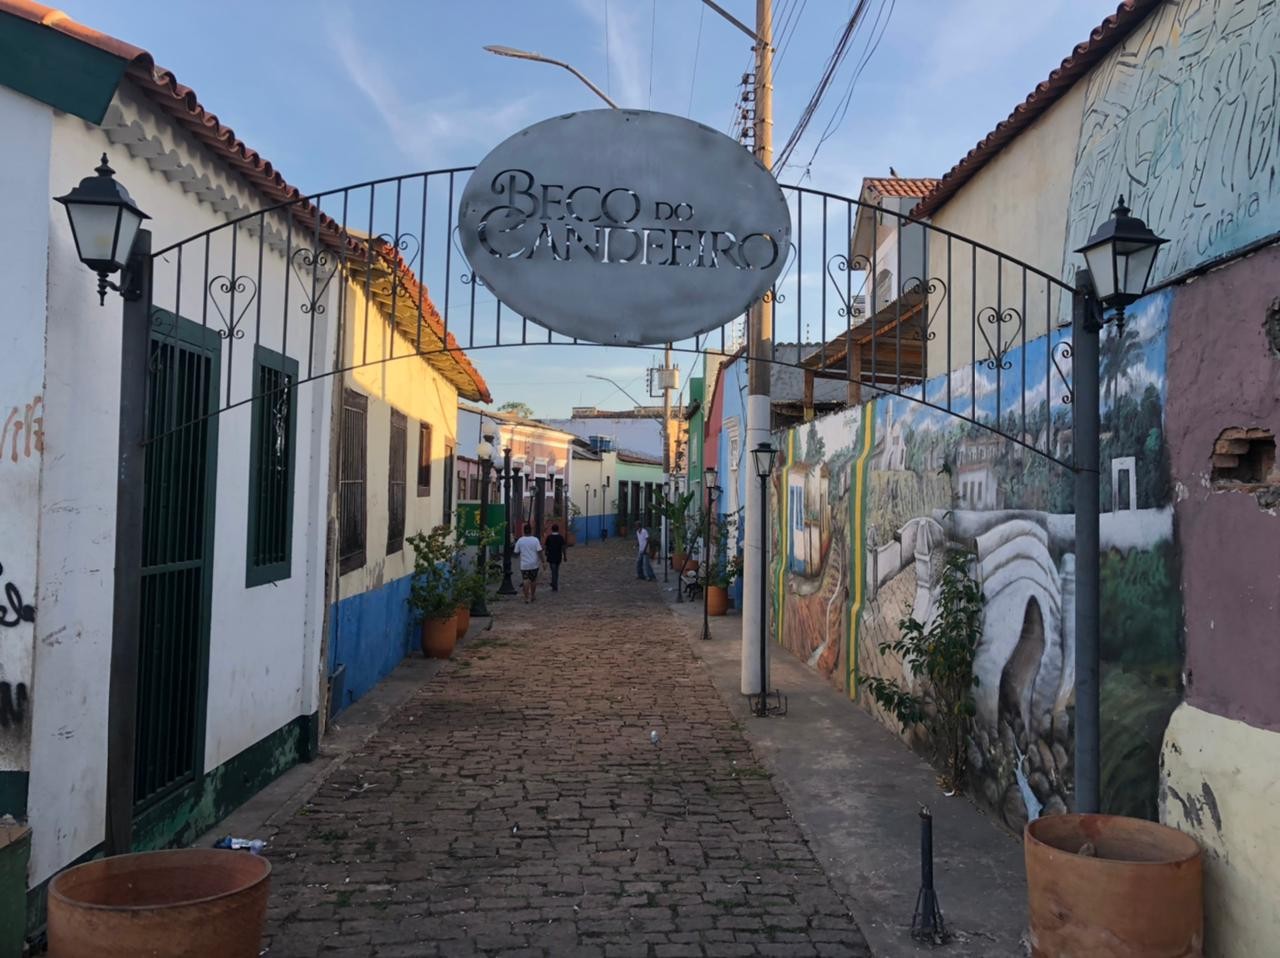 Chacina no Beco do Candeeiro em Cuiabá completa 24 anos sem nenhuma solução